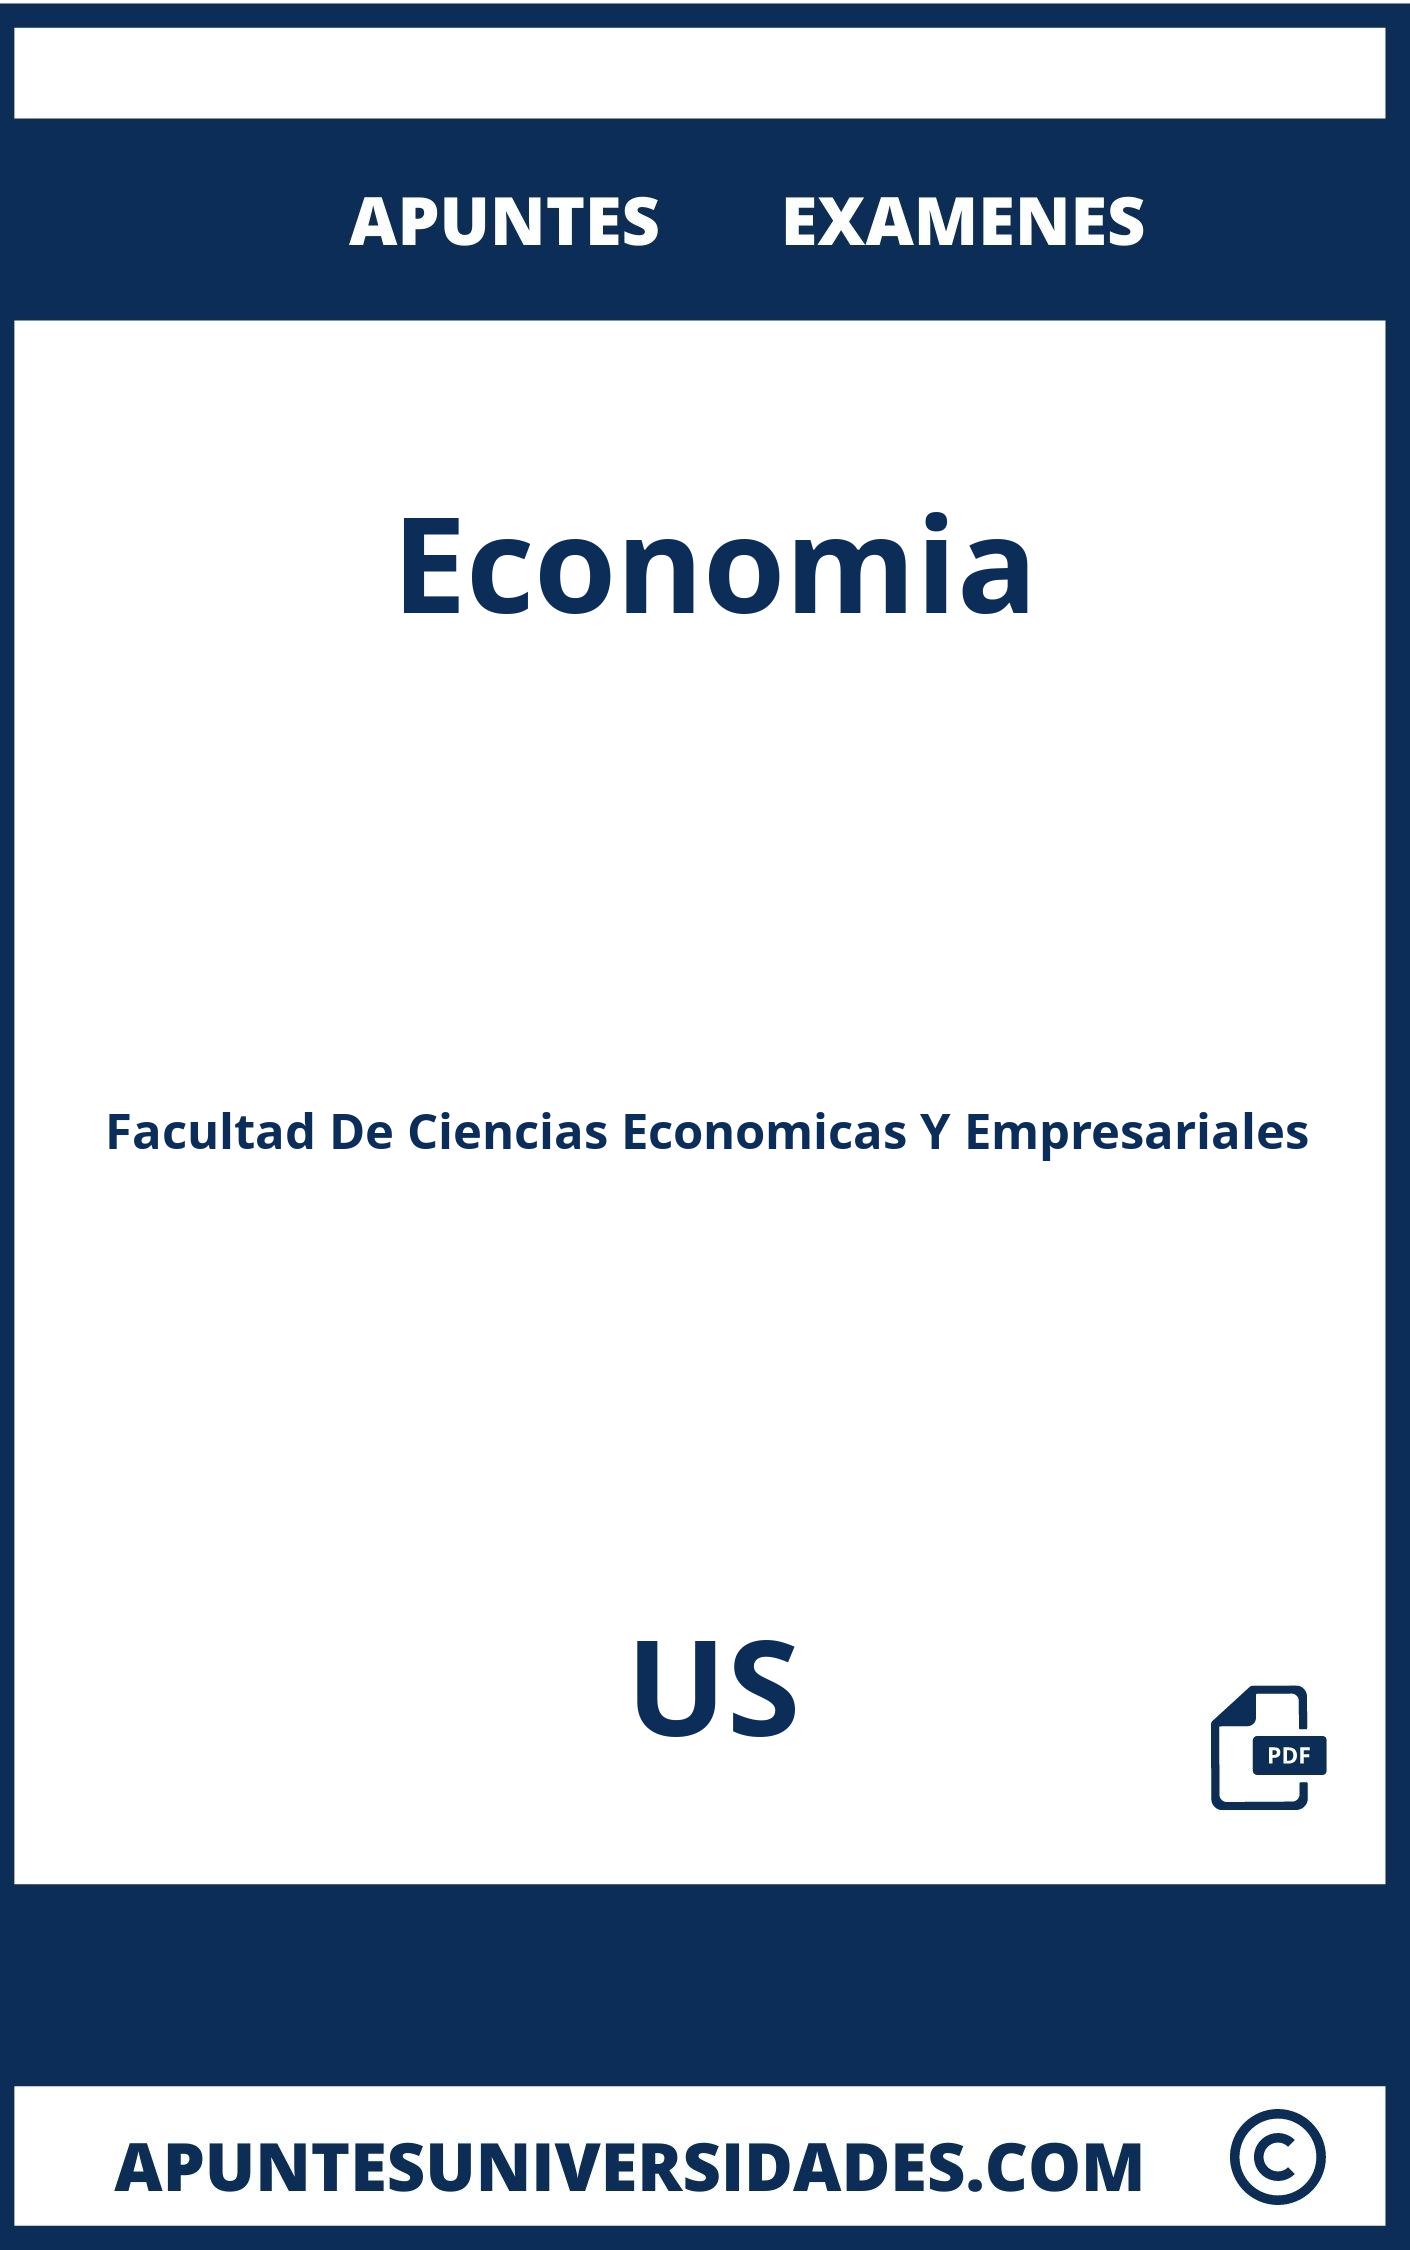 Apuntes Economia US y Examenes